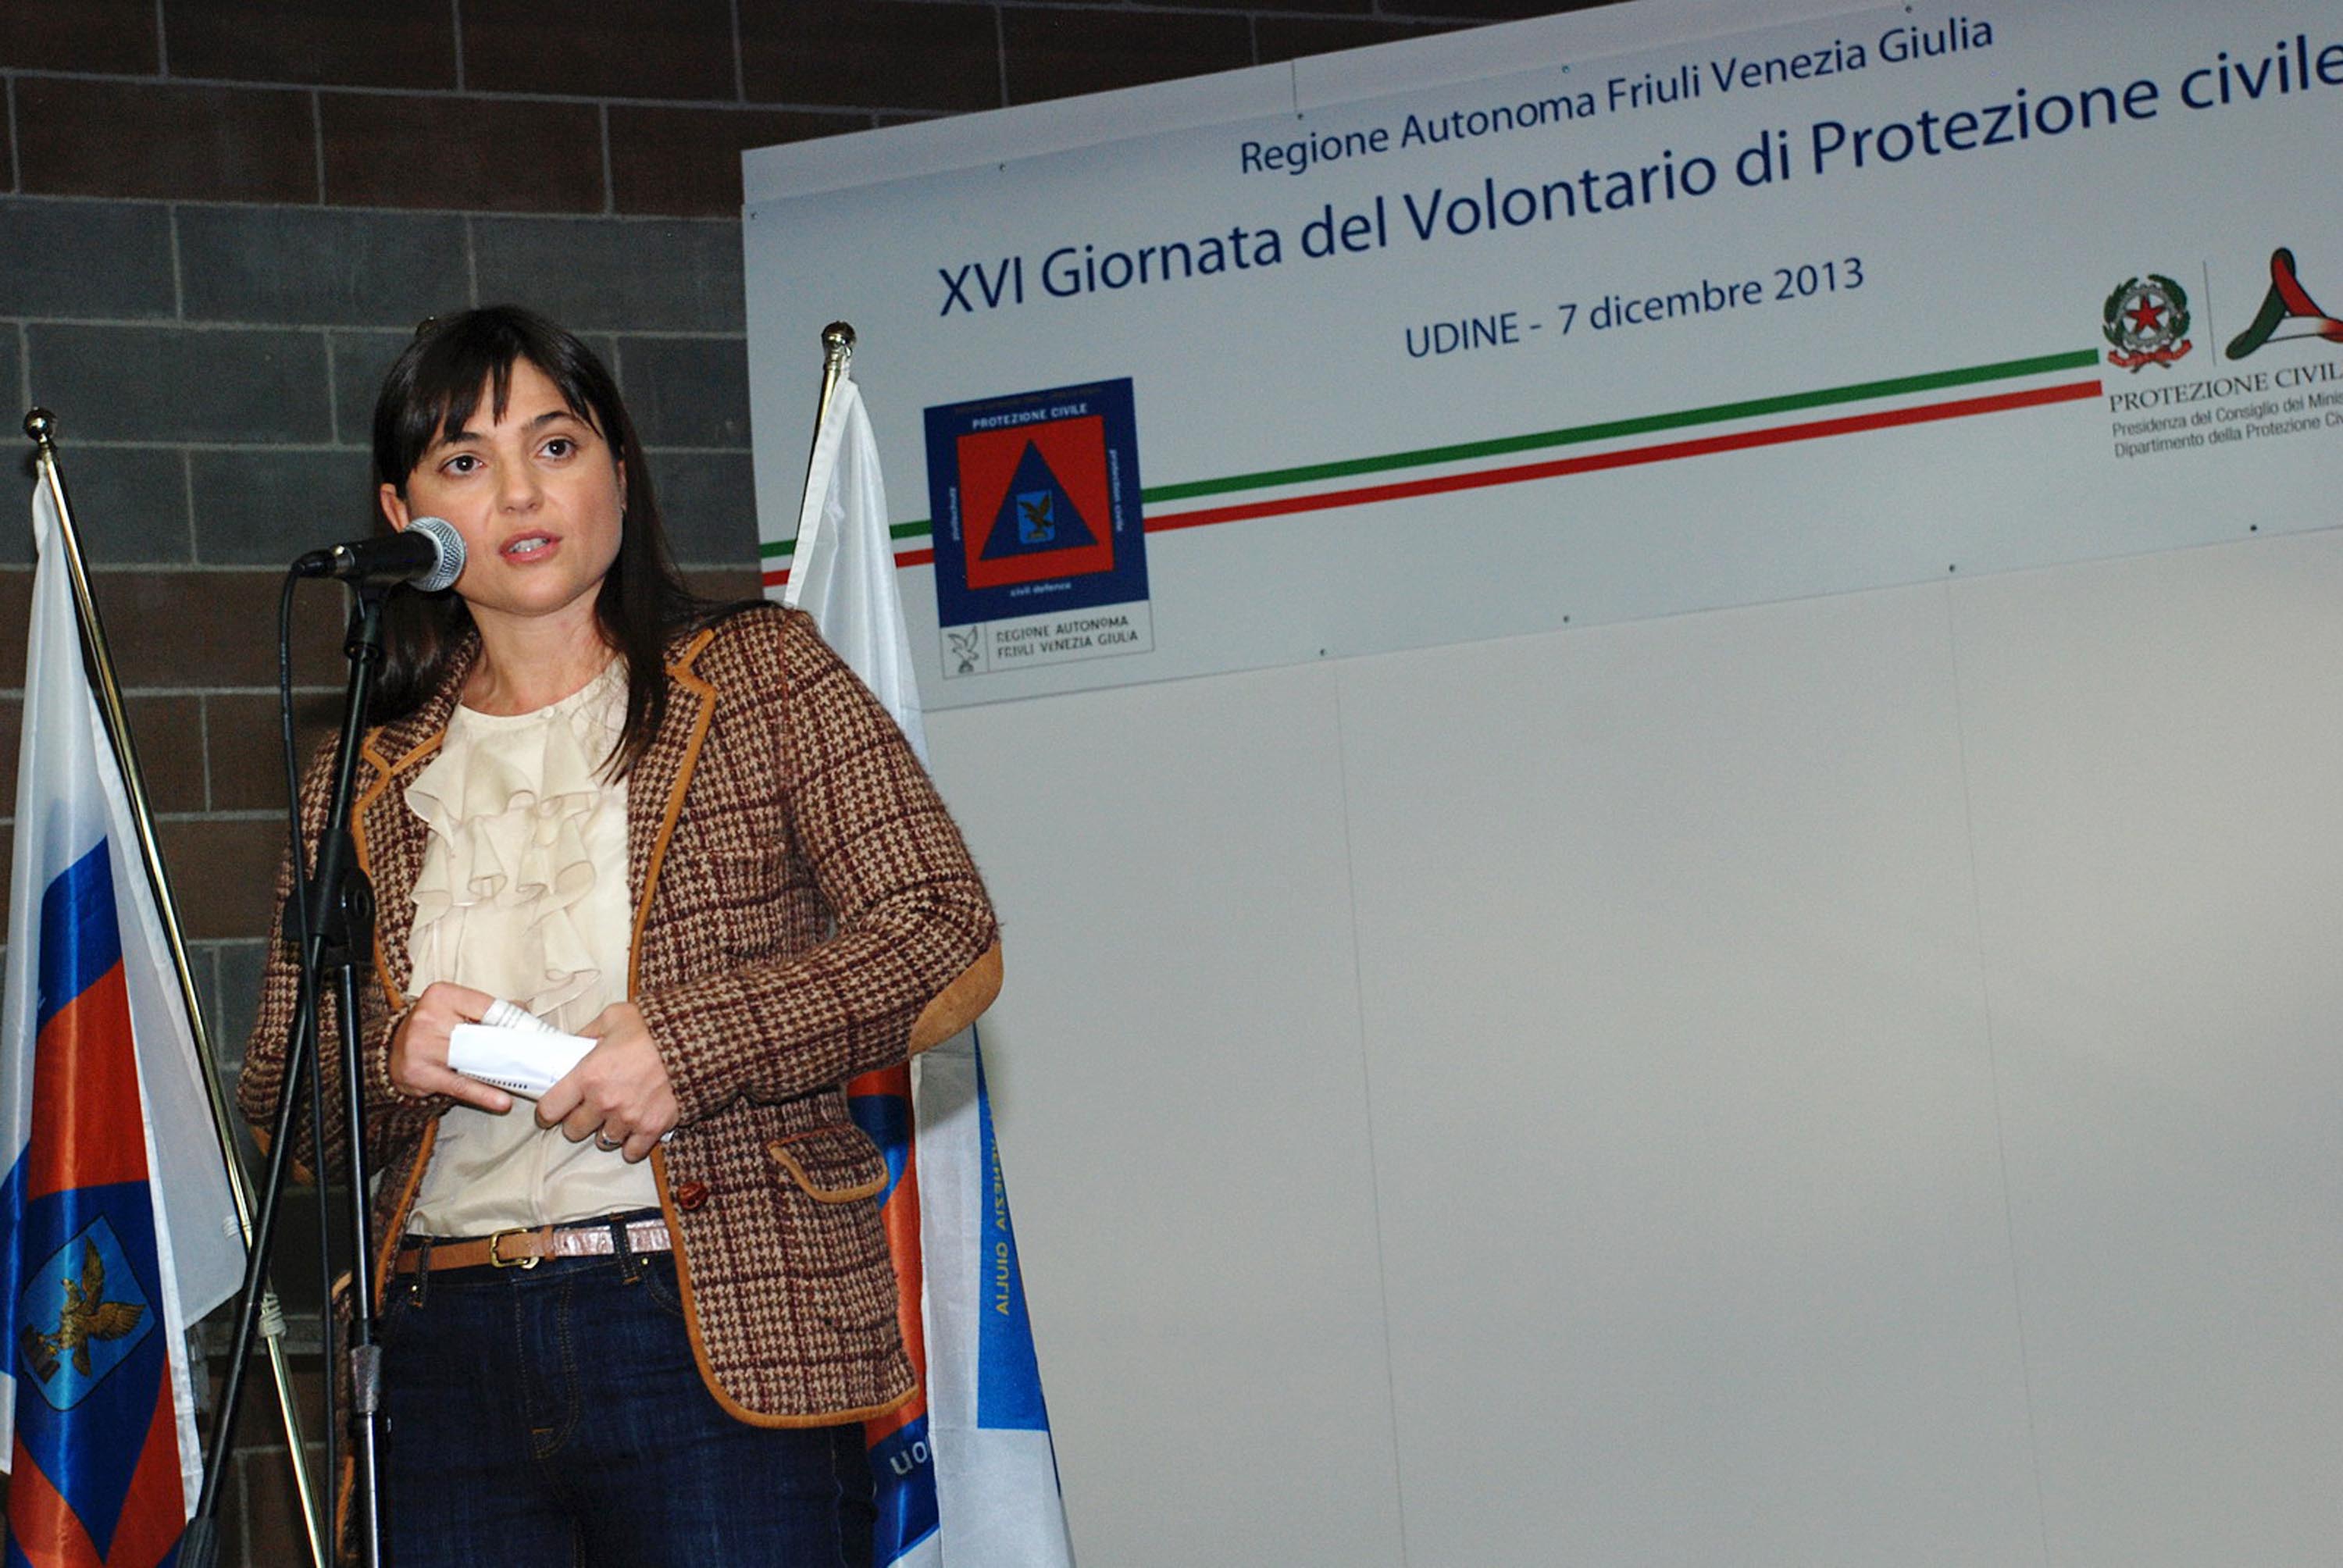 Debora Serracchiani (Presidente Friuli Venezia Giulia) interviene alla XVI Giornata del Volontario di Protezione civile - Udine 07/12/2013